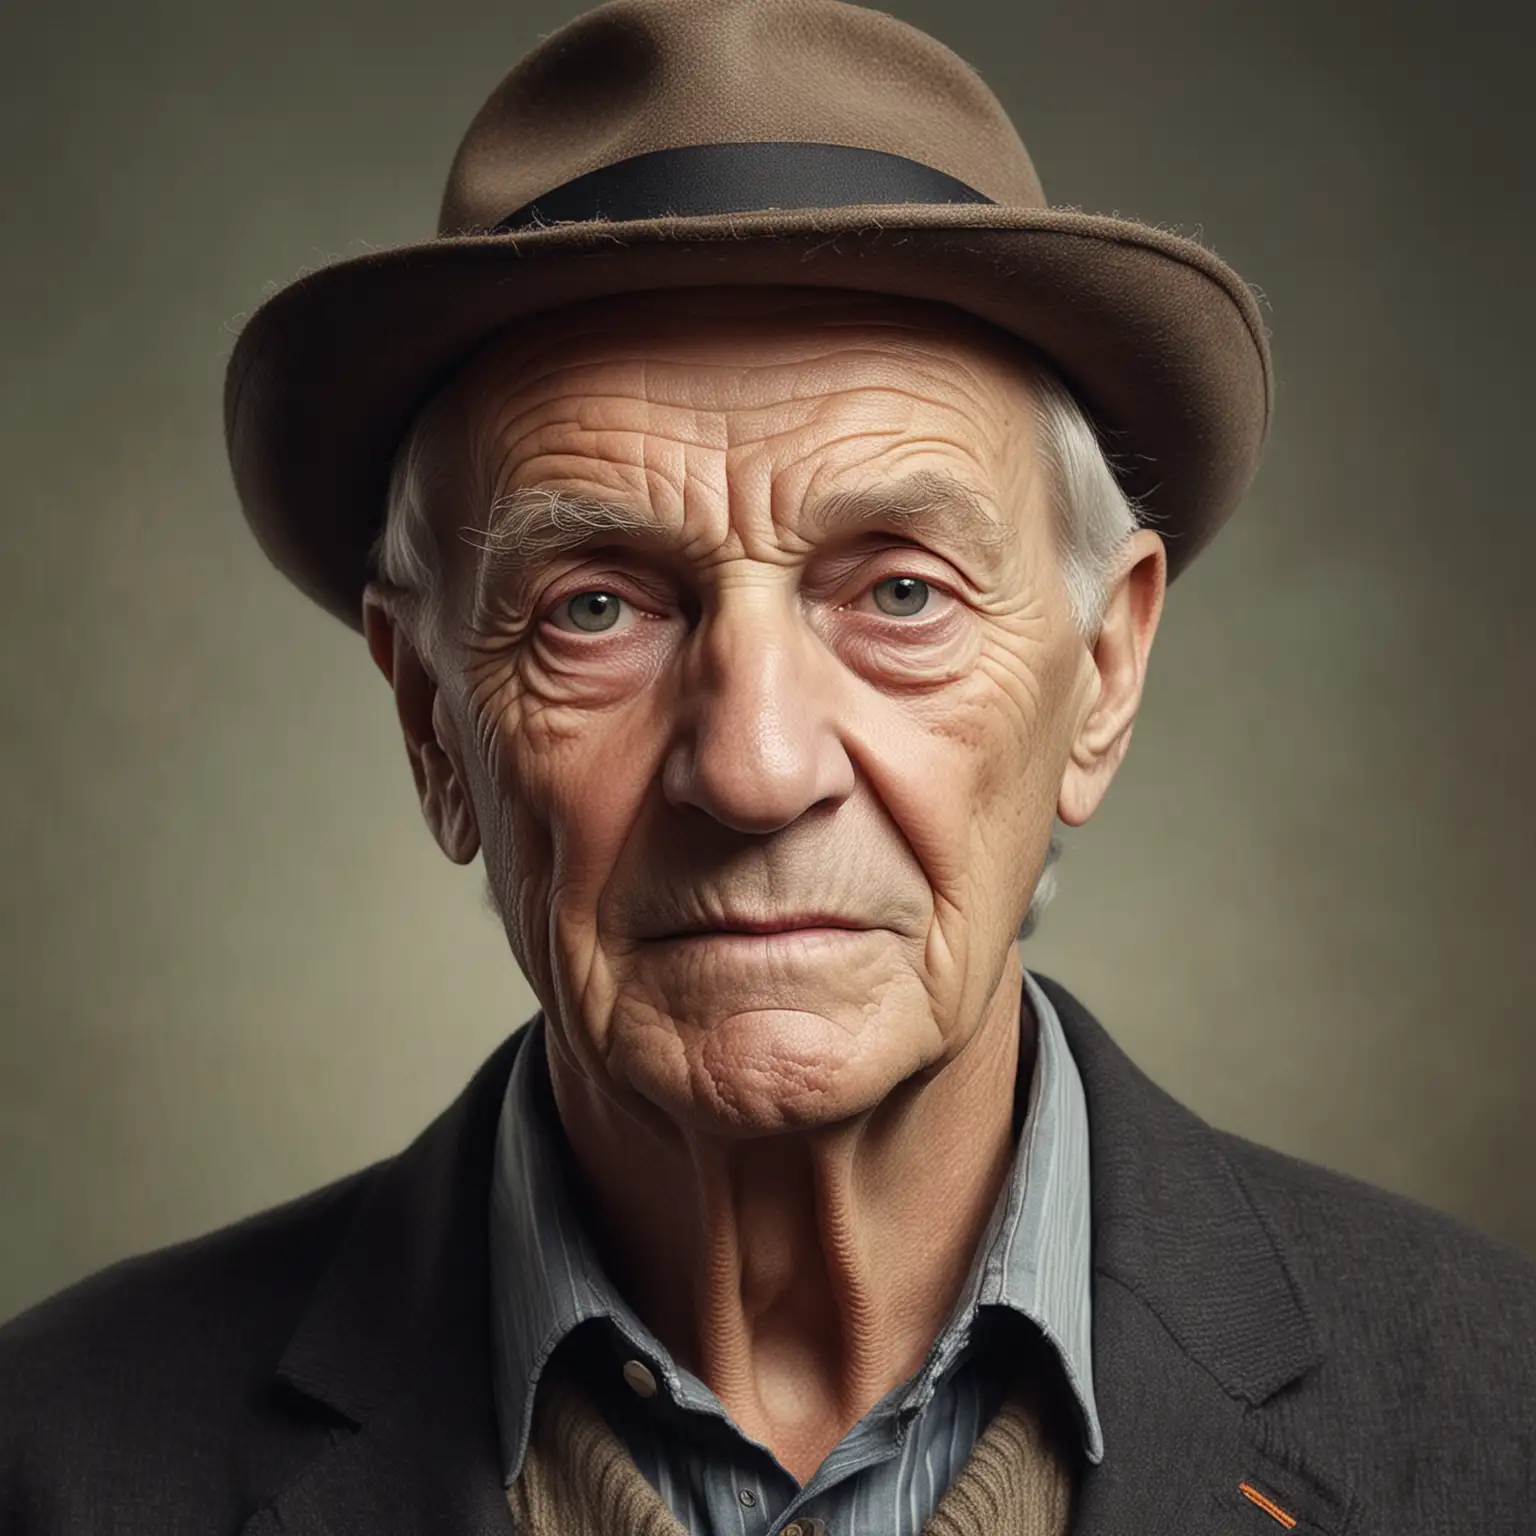 creer een realitische foto van een nederlandse man van de leeftijd van 85
